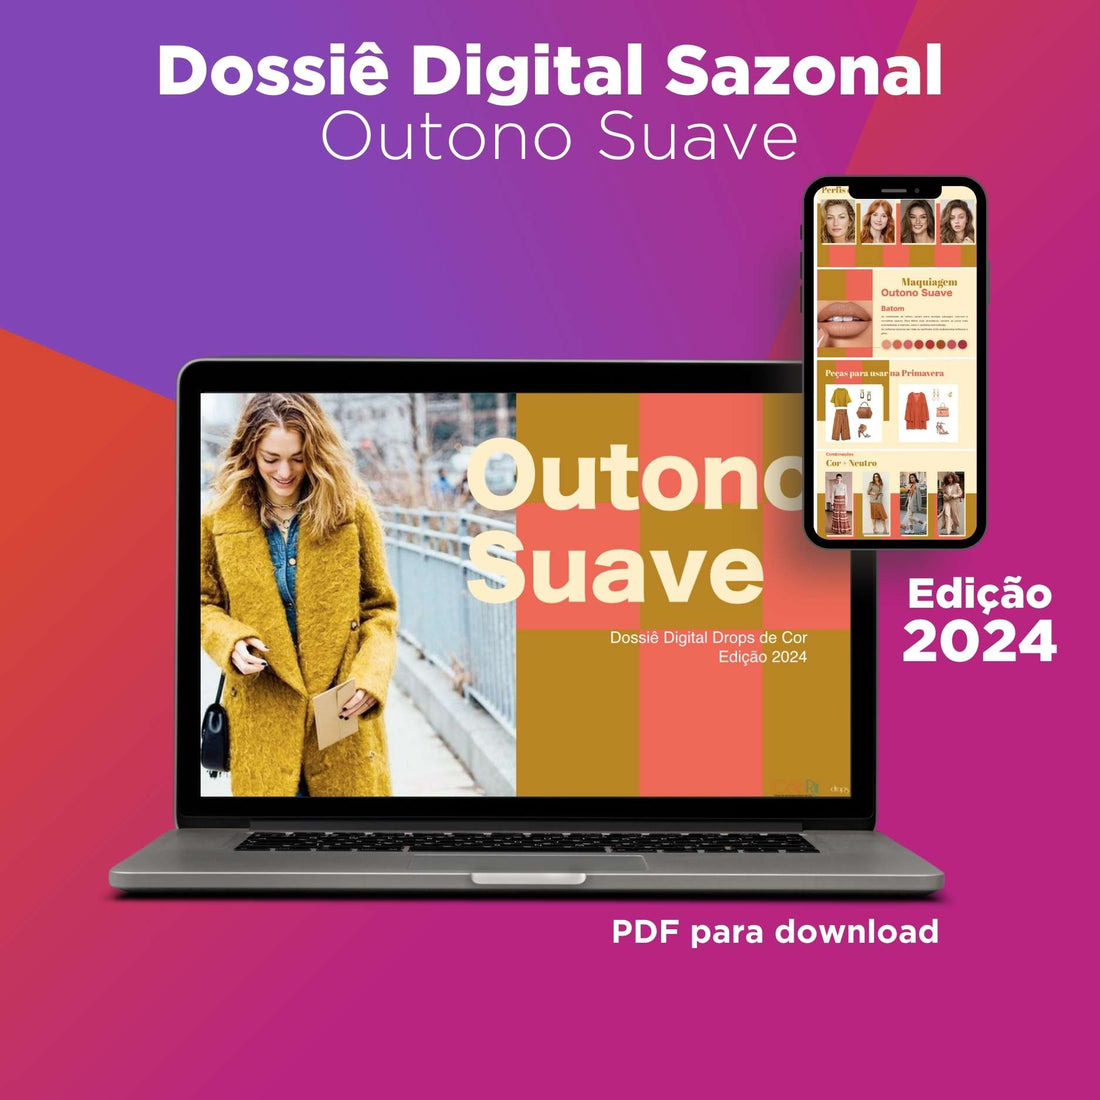 Dossiê Digital Sazonal- Outono Suave - Edição 2024